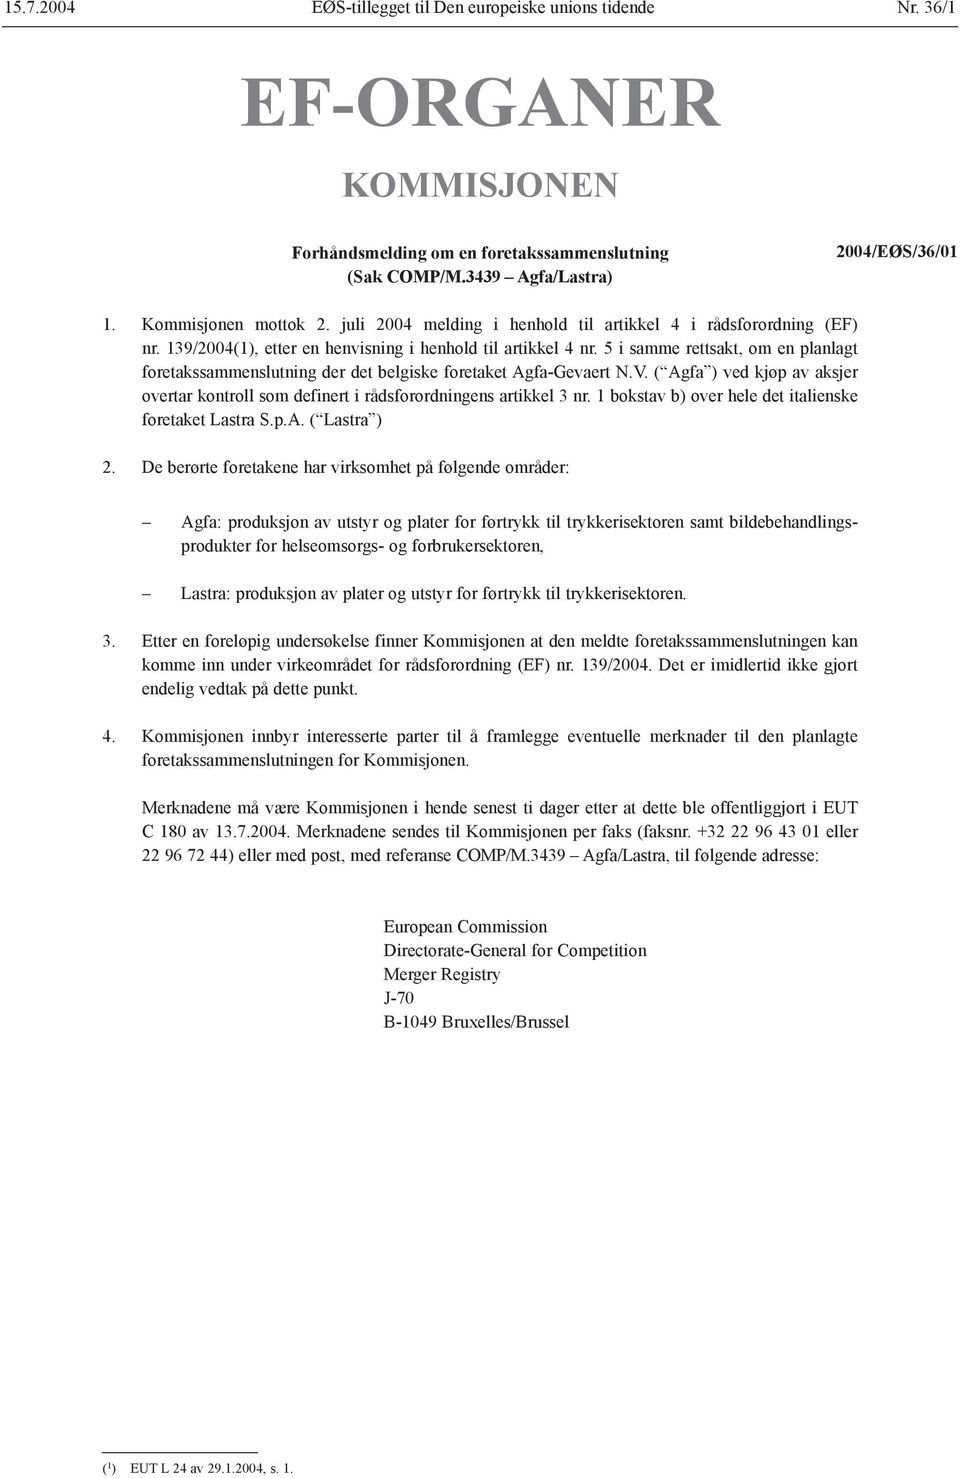 5 i samme rettsakt, om en planlagt foretakssammenslutning der det belgiske foretaket Agfa-Gevaert N.V. ( Agfa ) ved kjøp av aksjer overtar kontroll som definert i rådsforordningens artikkel 3 nr.